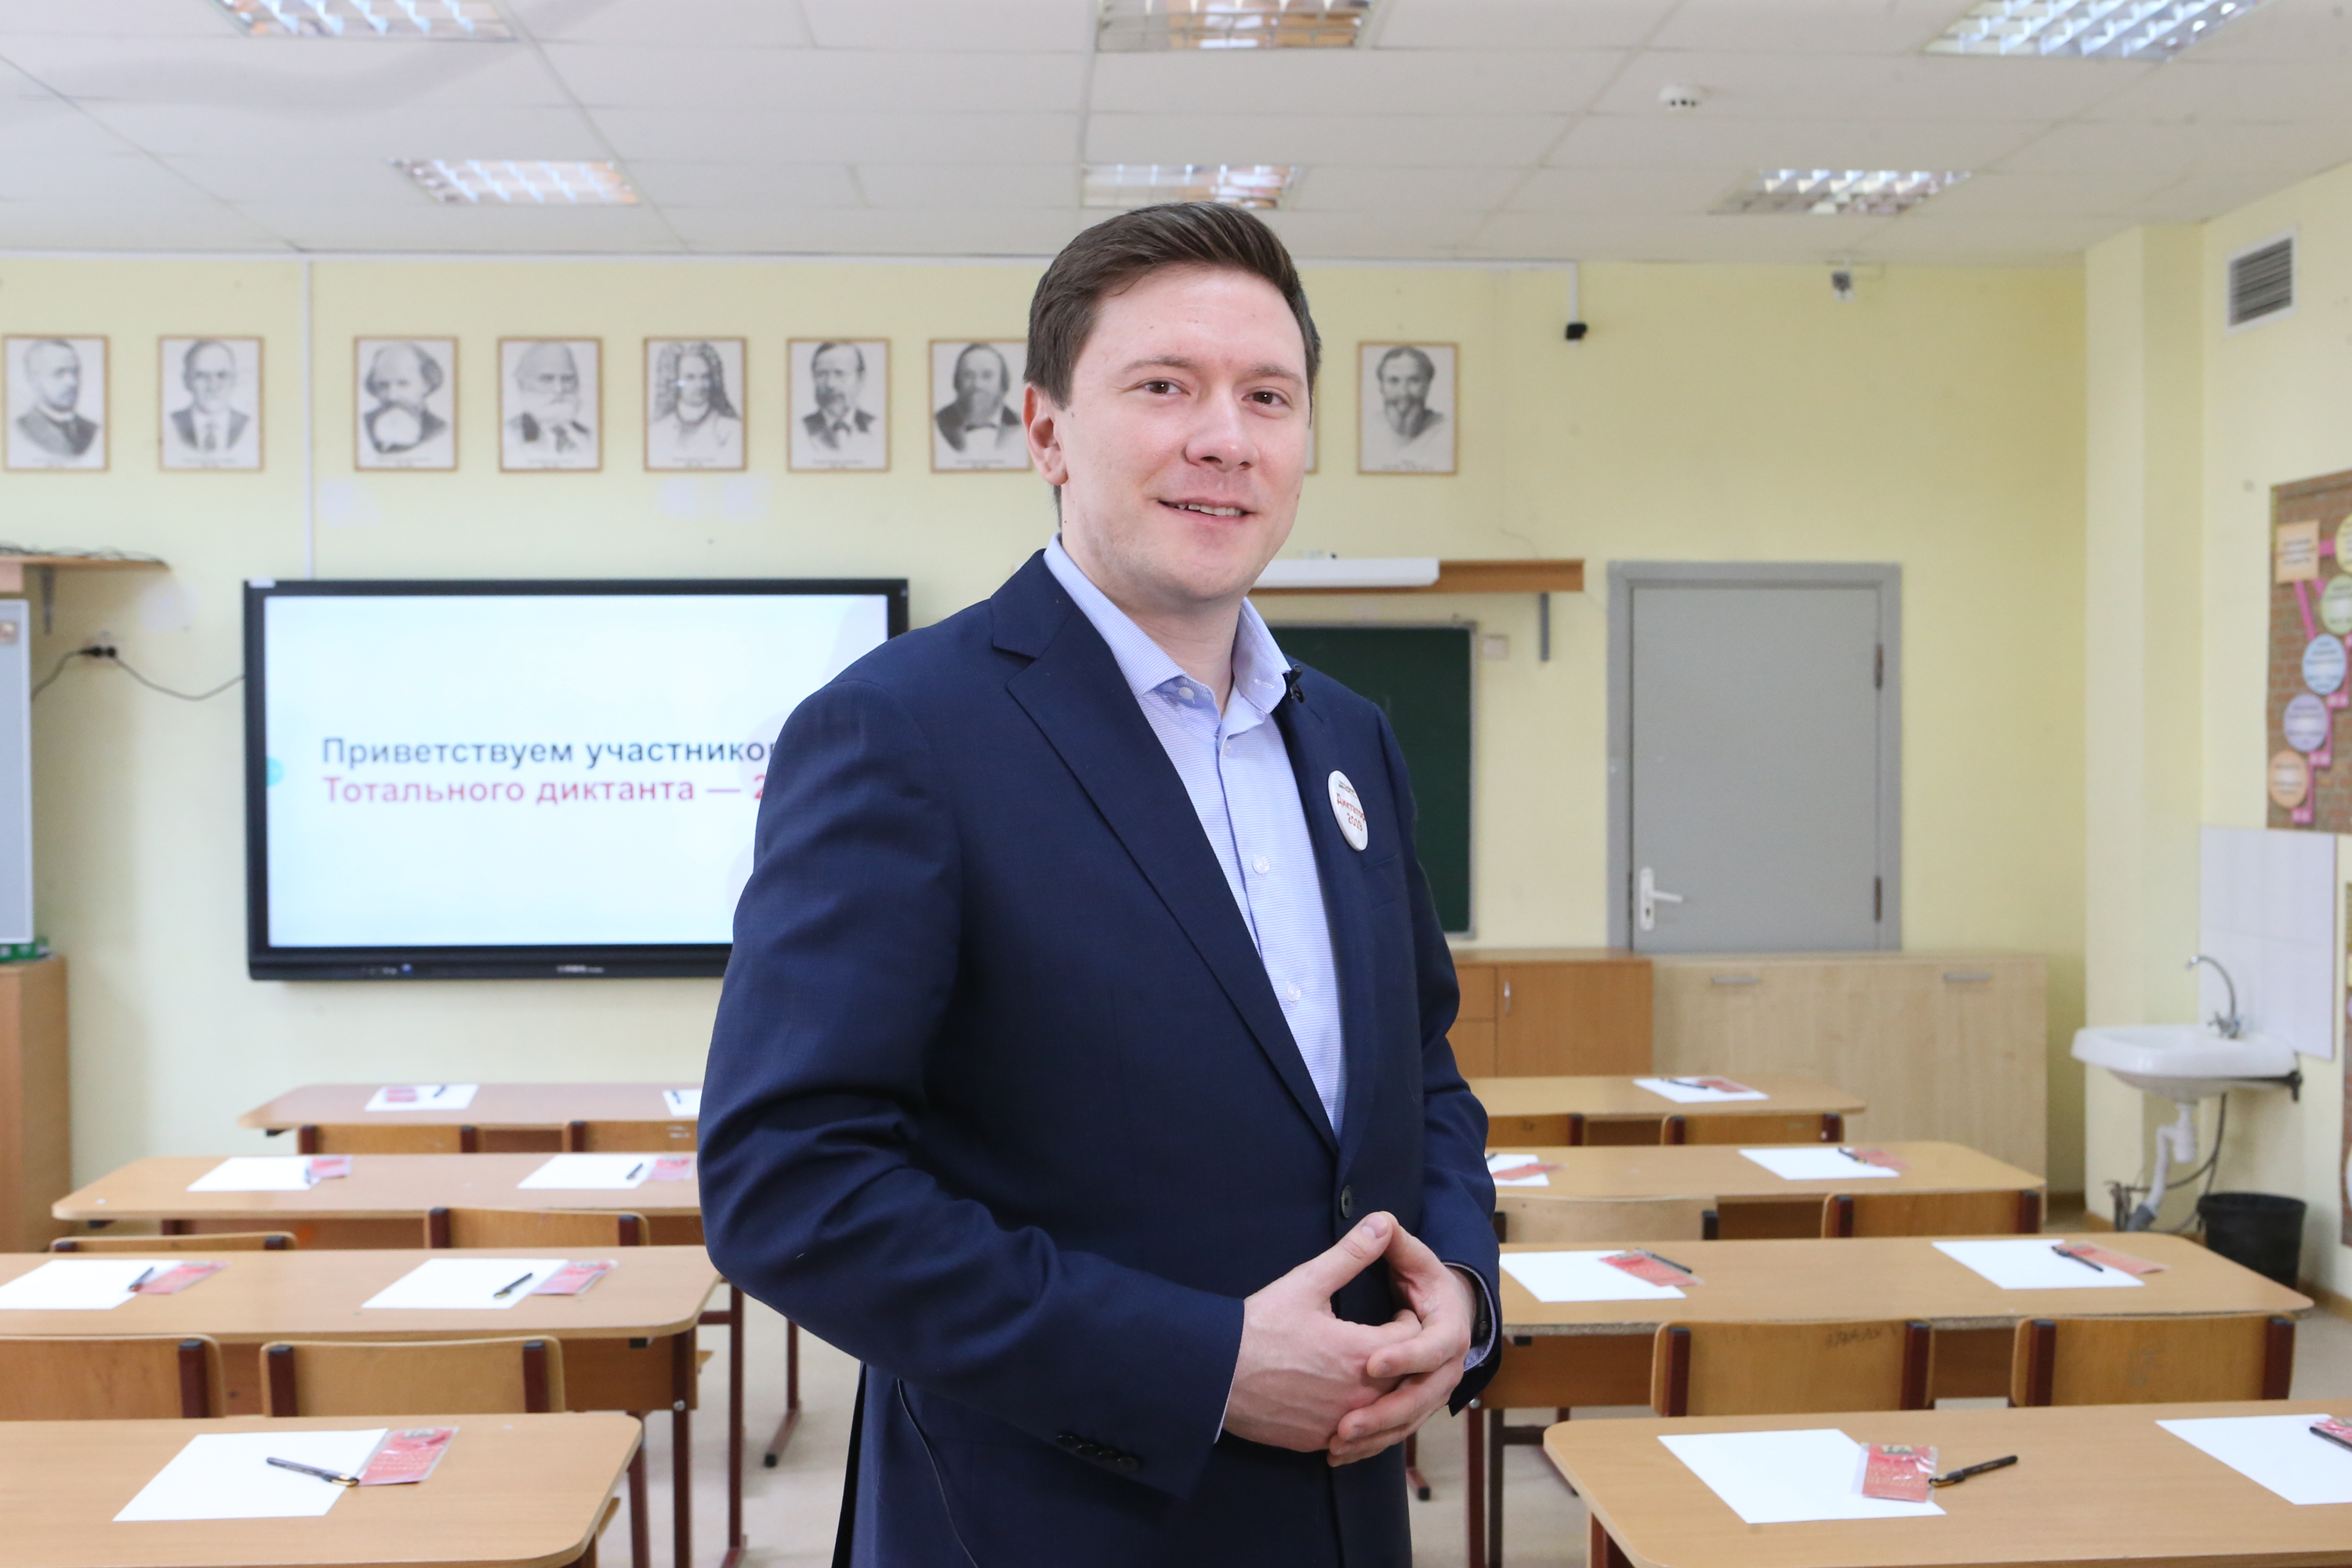 Депутат Мосгордумы Александр Козлов объясняет, как установить шлагбаум по закону. Фото: Виктор Хабаров